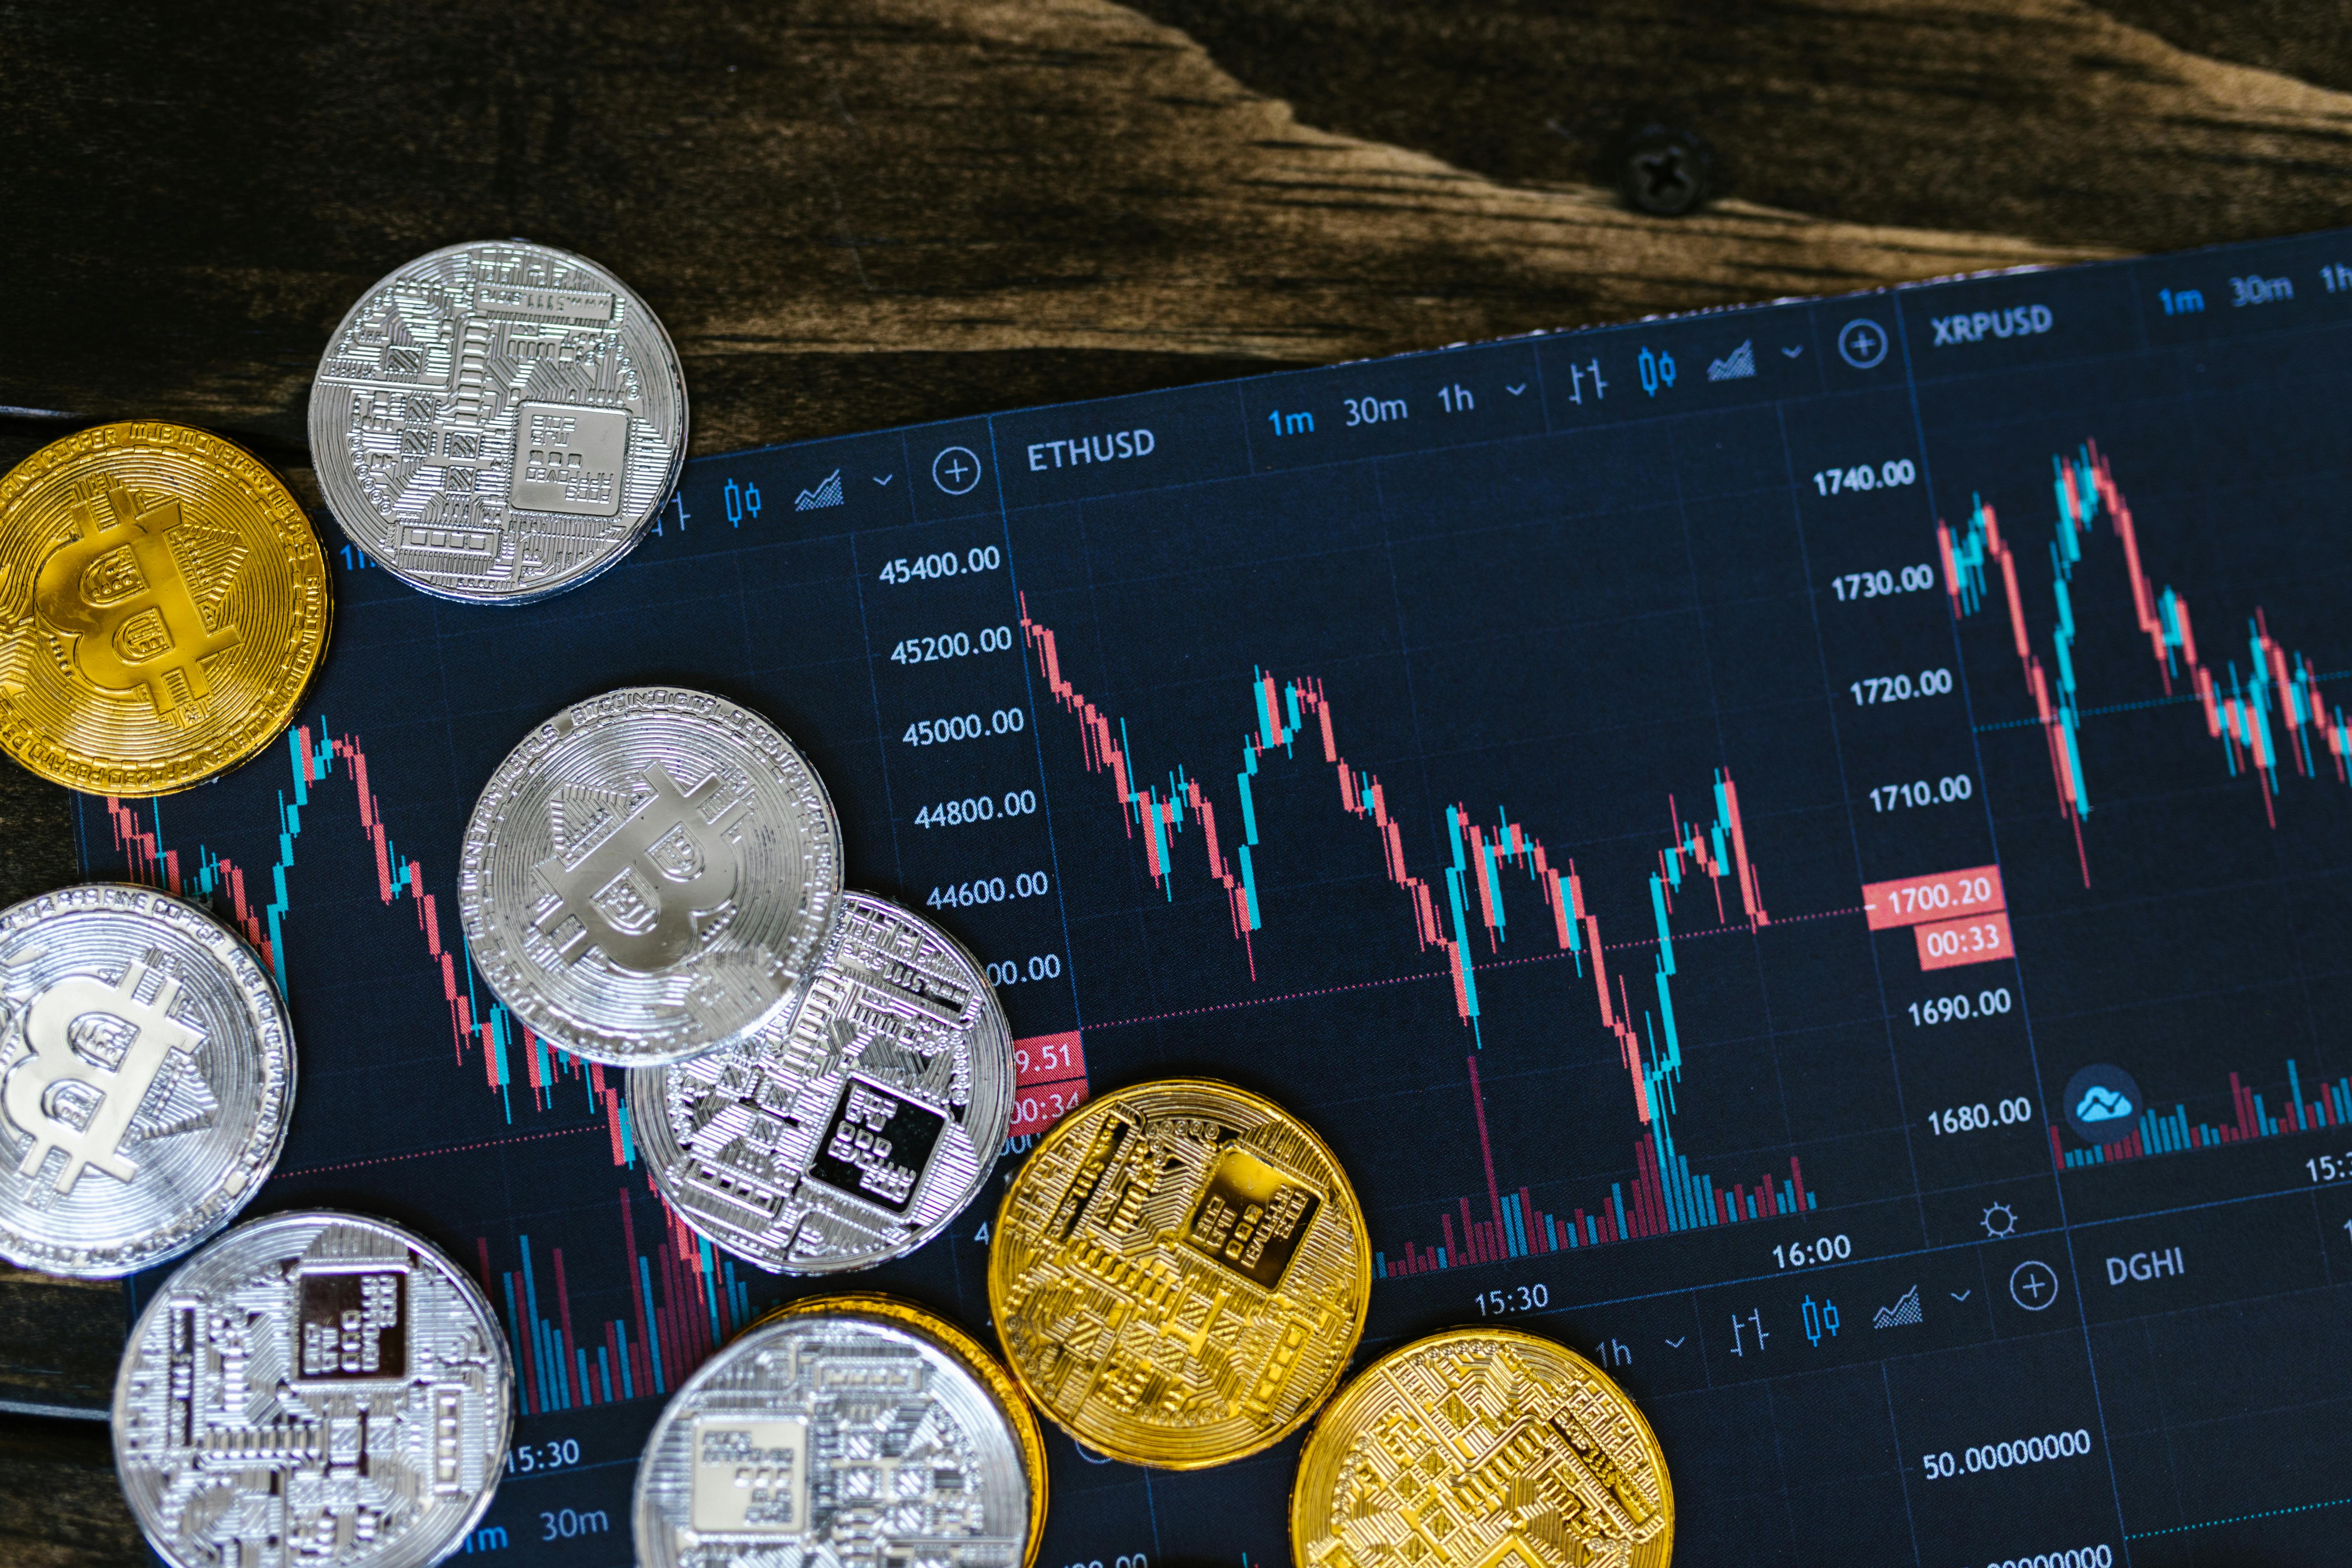 Crypto Trading During A Volatile Market